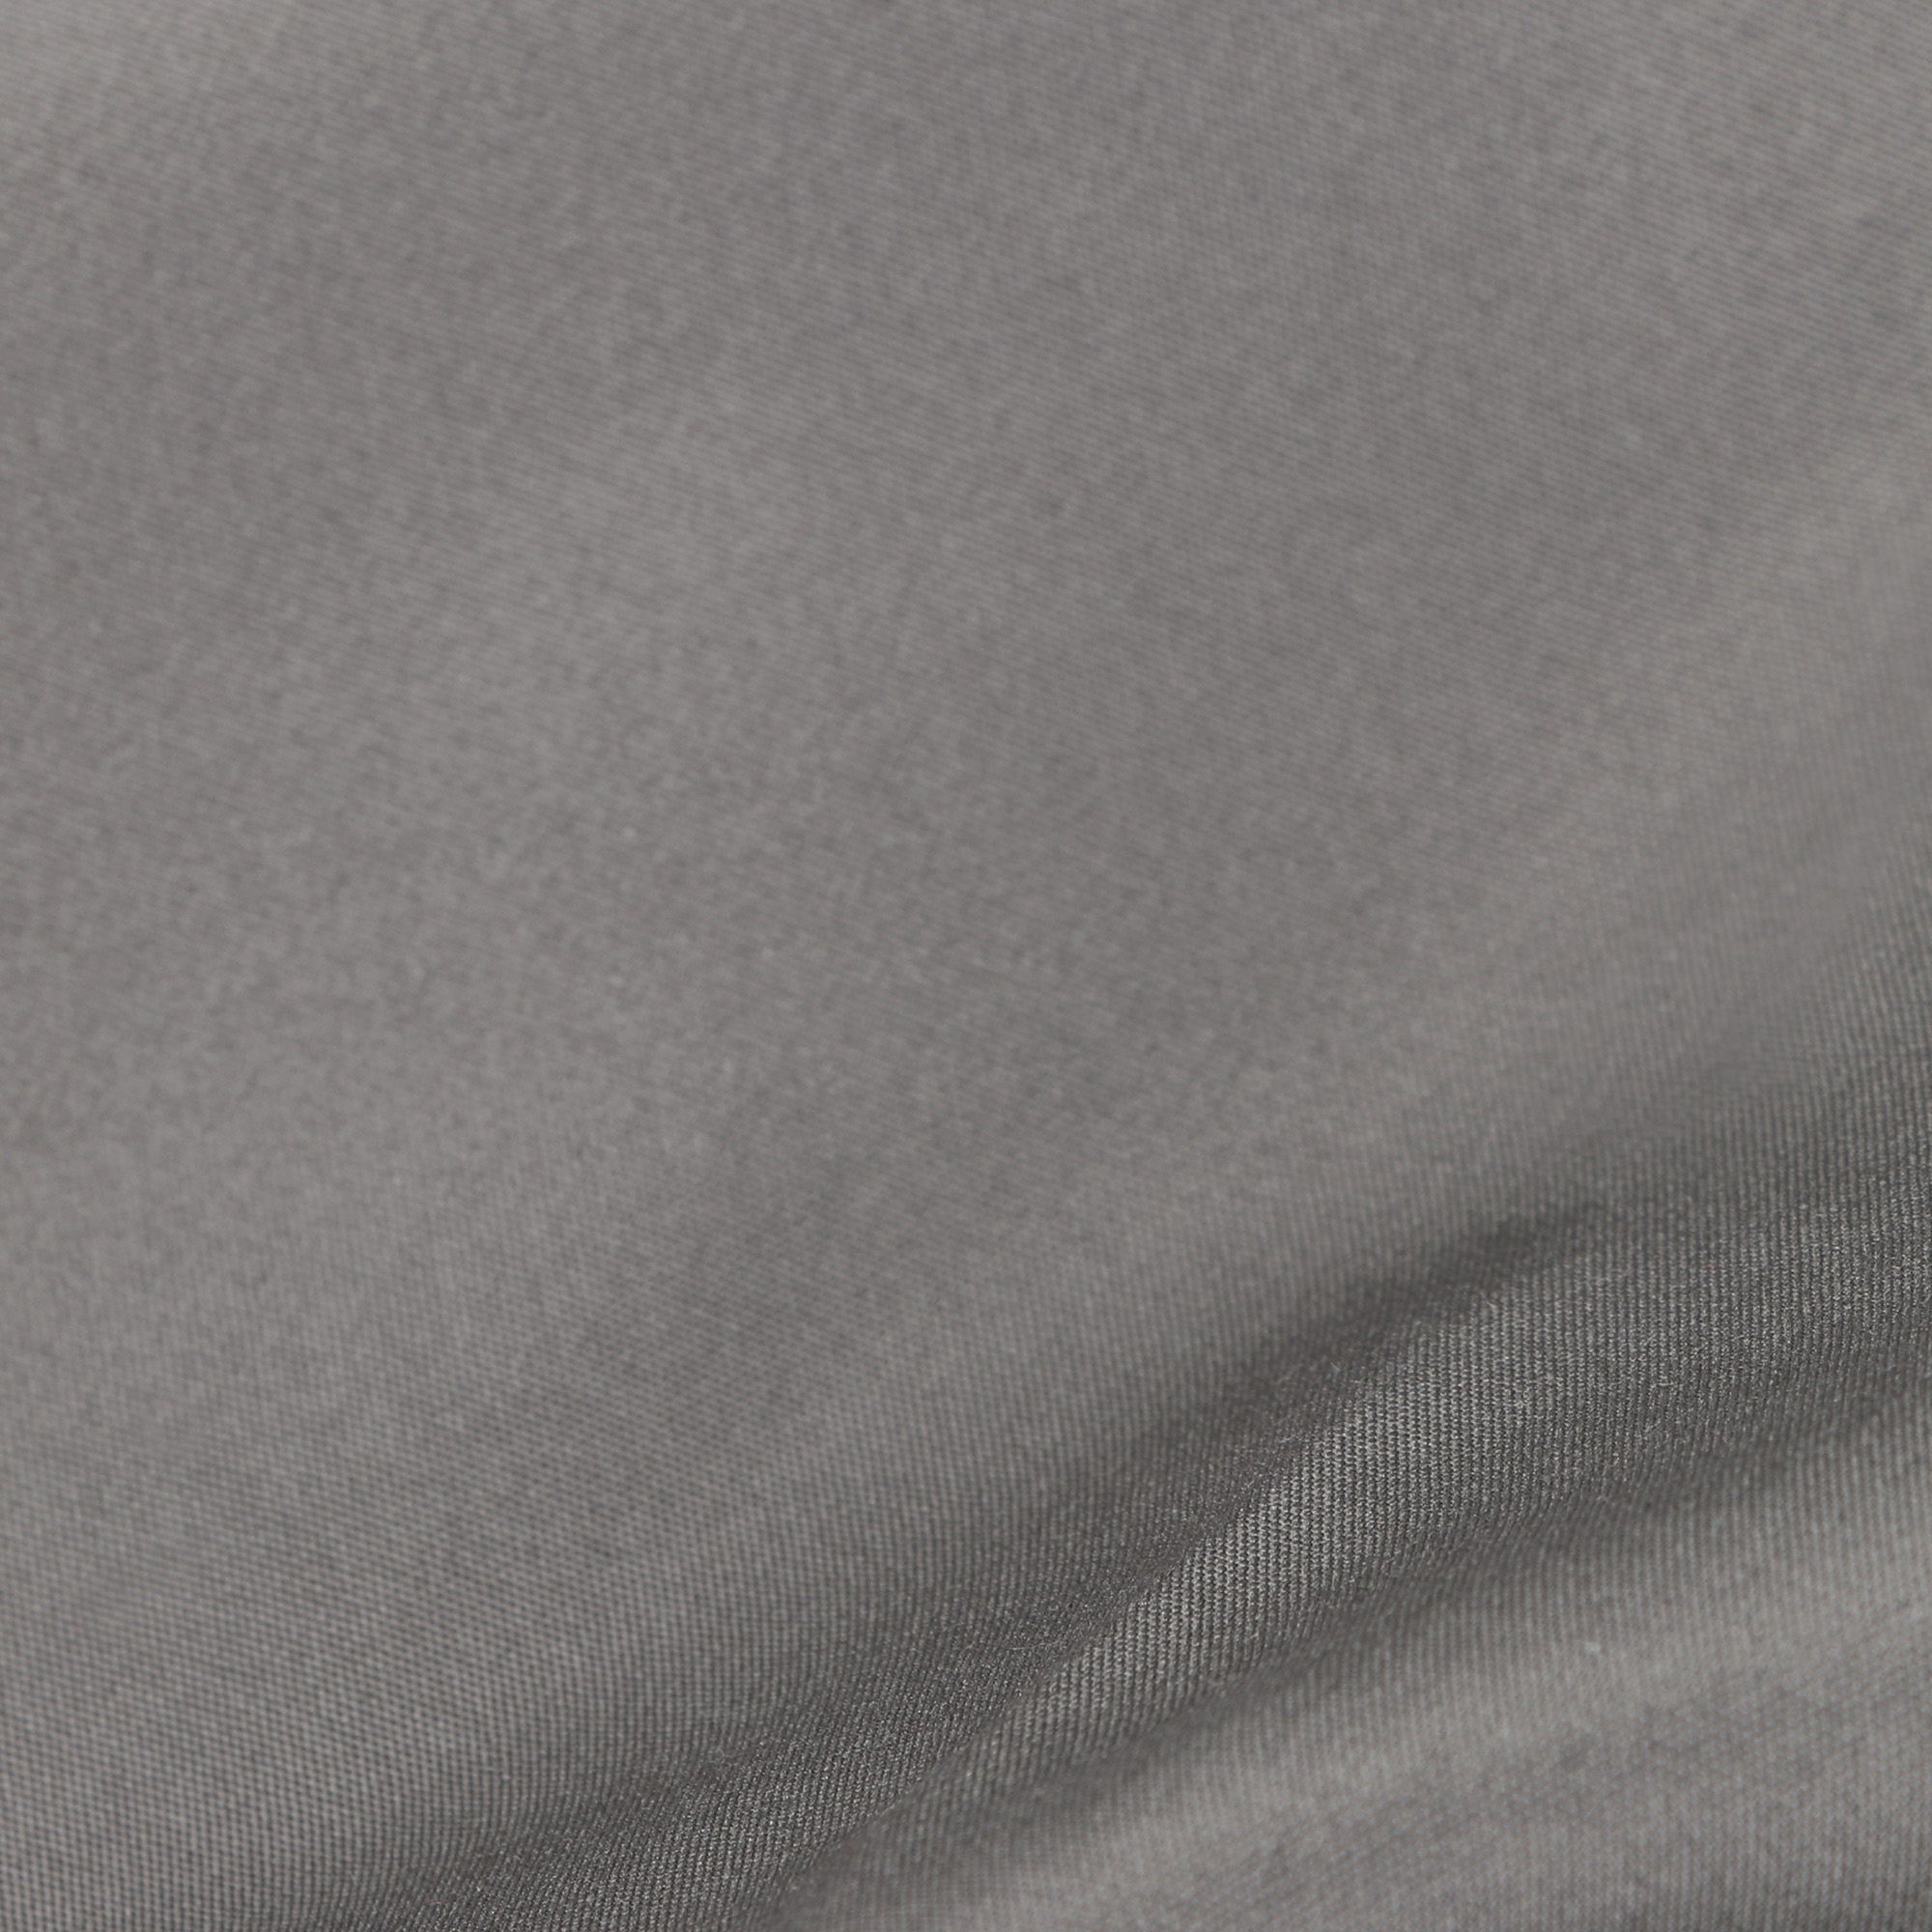 фото Мужские шорты пляжные pantelemone ph-114 темно-серые 56